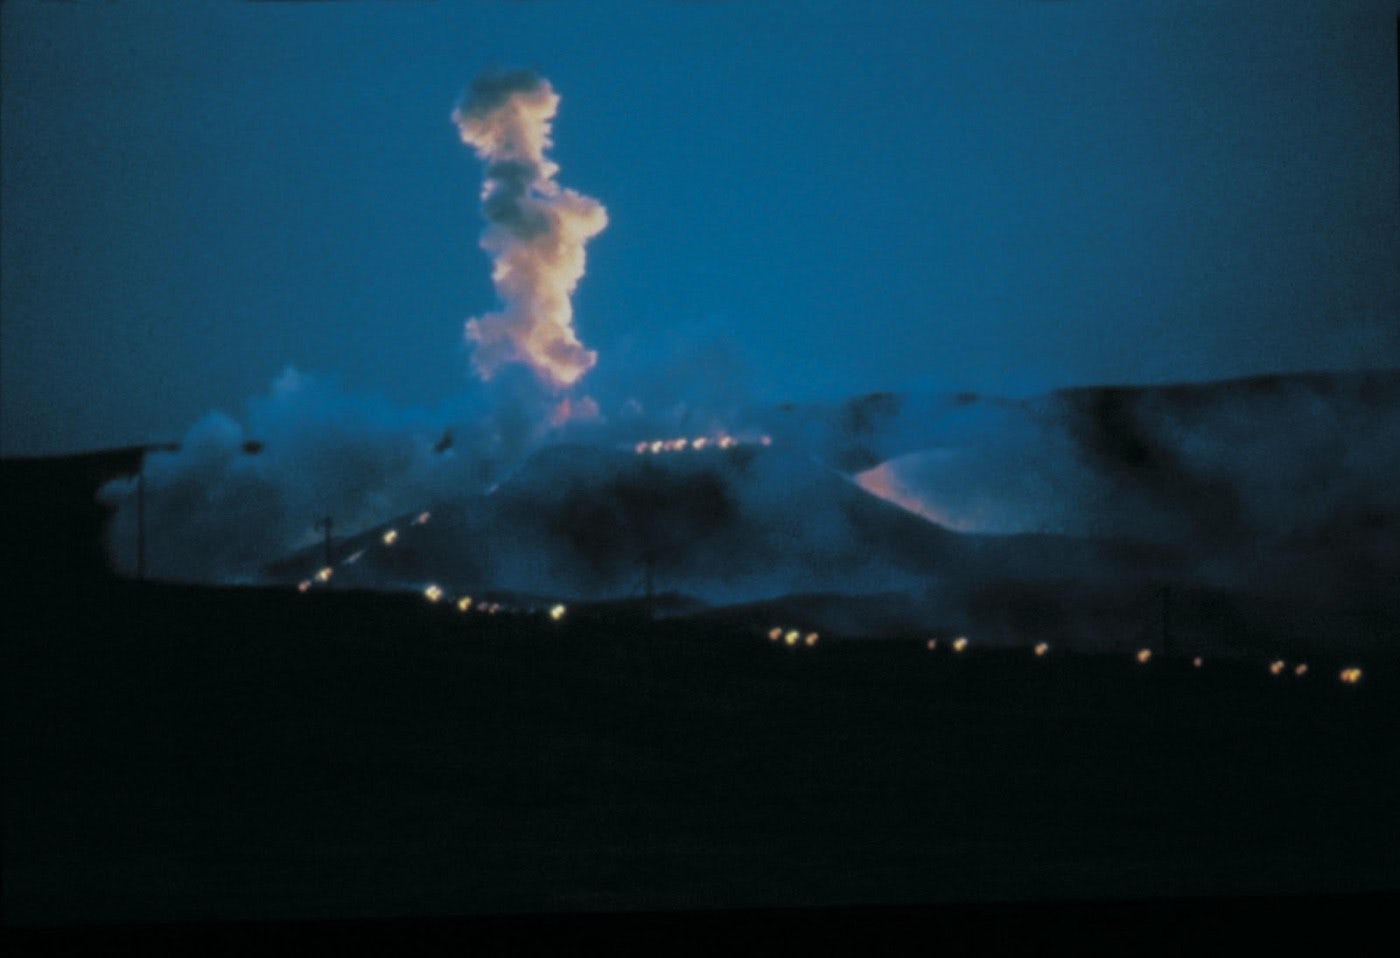 蔡国强，《万里长城延长一万米：为外星人作的计划第十号》，1993。实现于嘉峪关戈壁沙漠、万里长城之西部，甘肃省，2月27日晚上7点35分，历时约15分钟。火药（600公斤）、两条导火线（各10000米），爆破长度约10000米。Masanobu Moriyama摄，蔡工作室提供